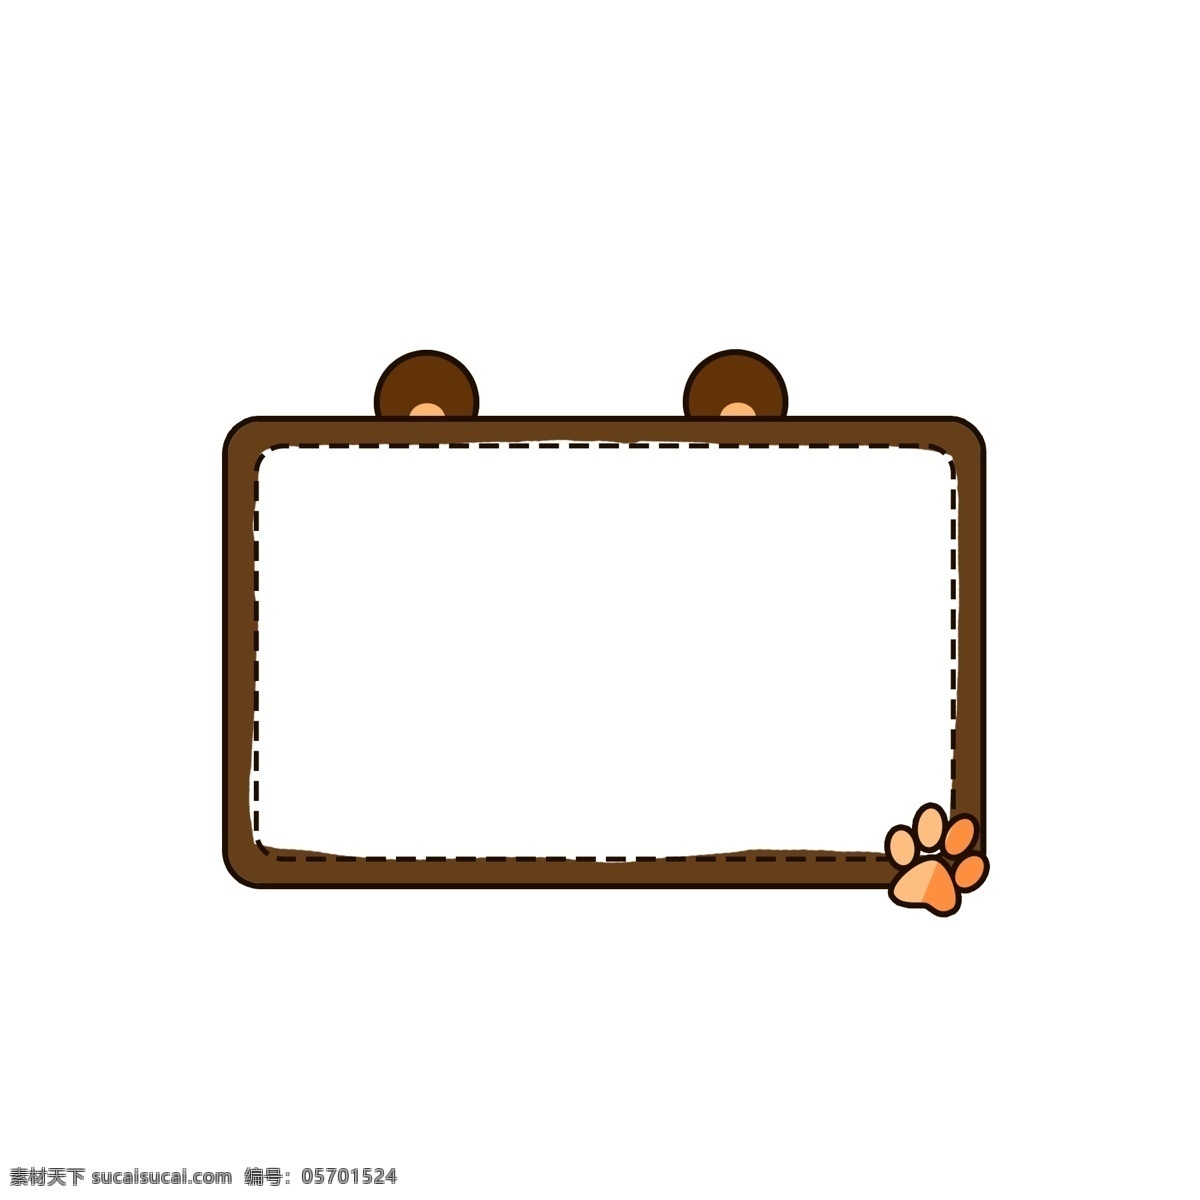 卡通 可爱 动物 熊 脚印 边框 棕熊 矩形 脚掌 对话框 元素